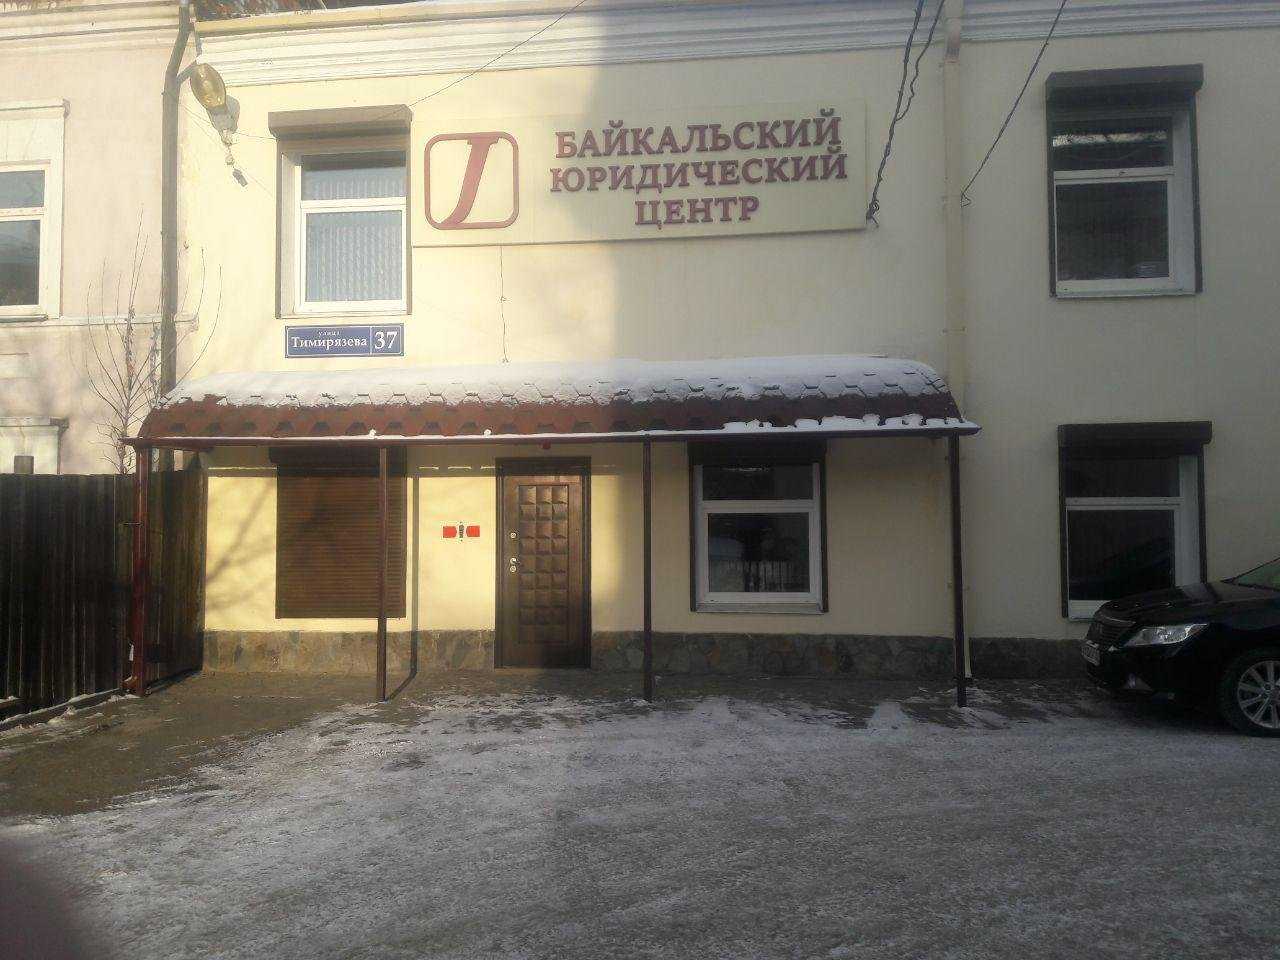 коллегия адвокатов Иркутской области Байкальский юридический центр фото 1